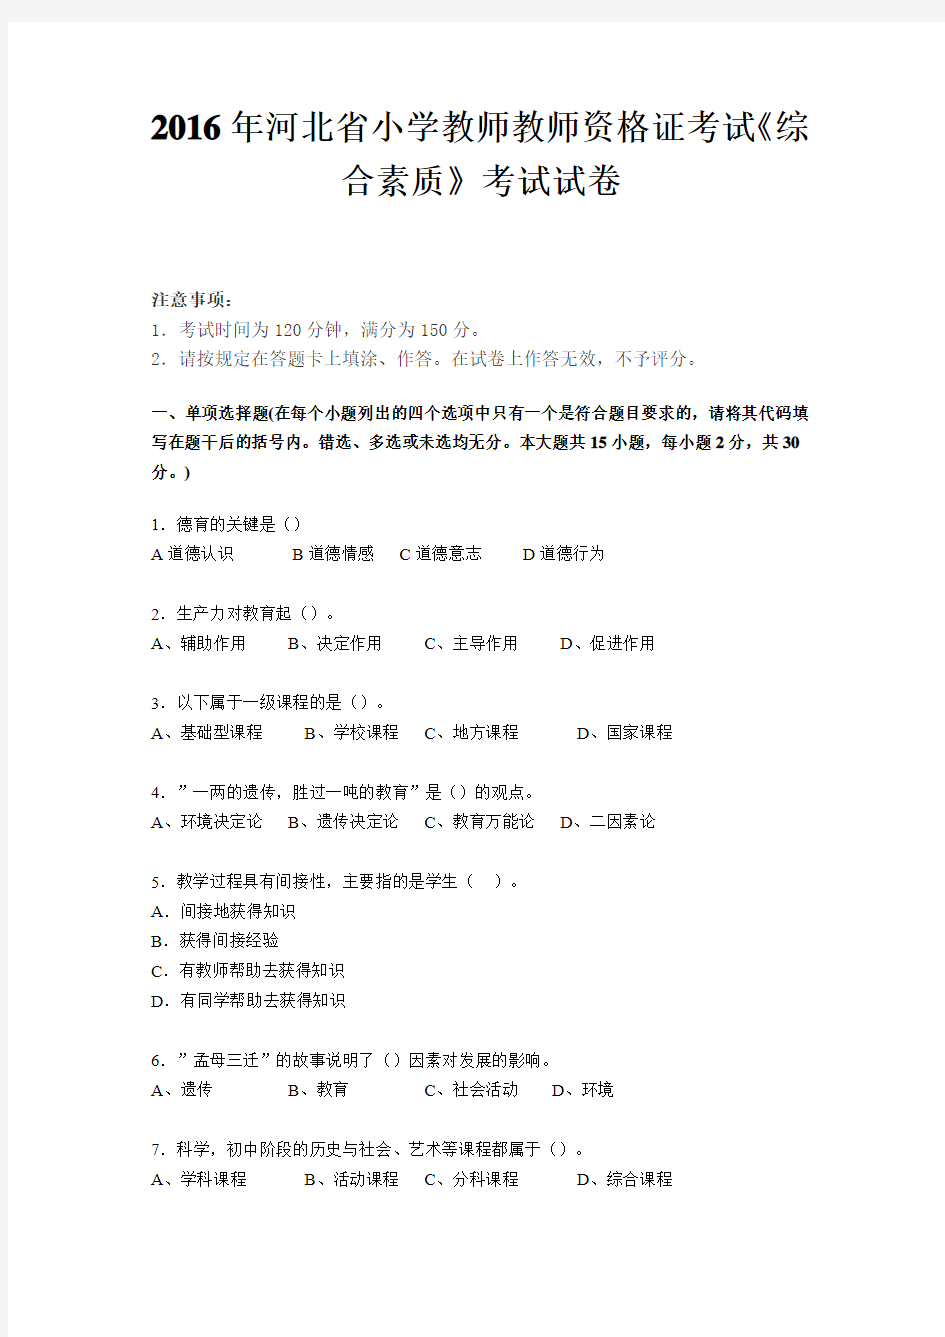 2016年河北省小学教师教师资格证考试《综合素质》考试试卷